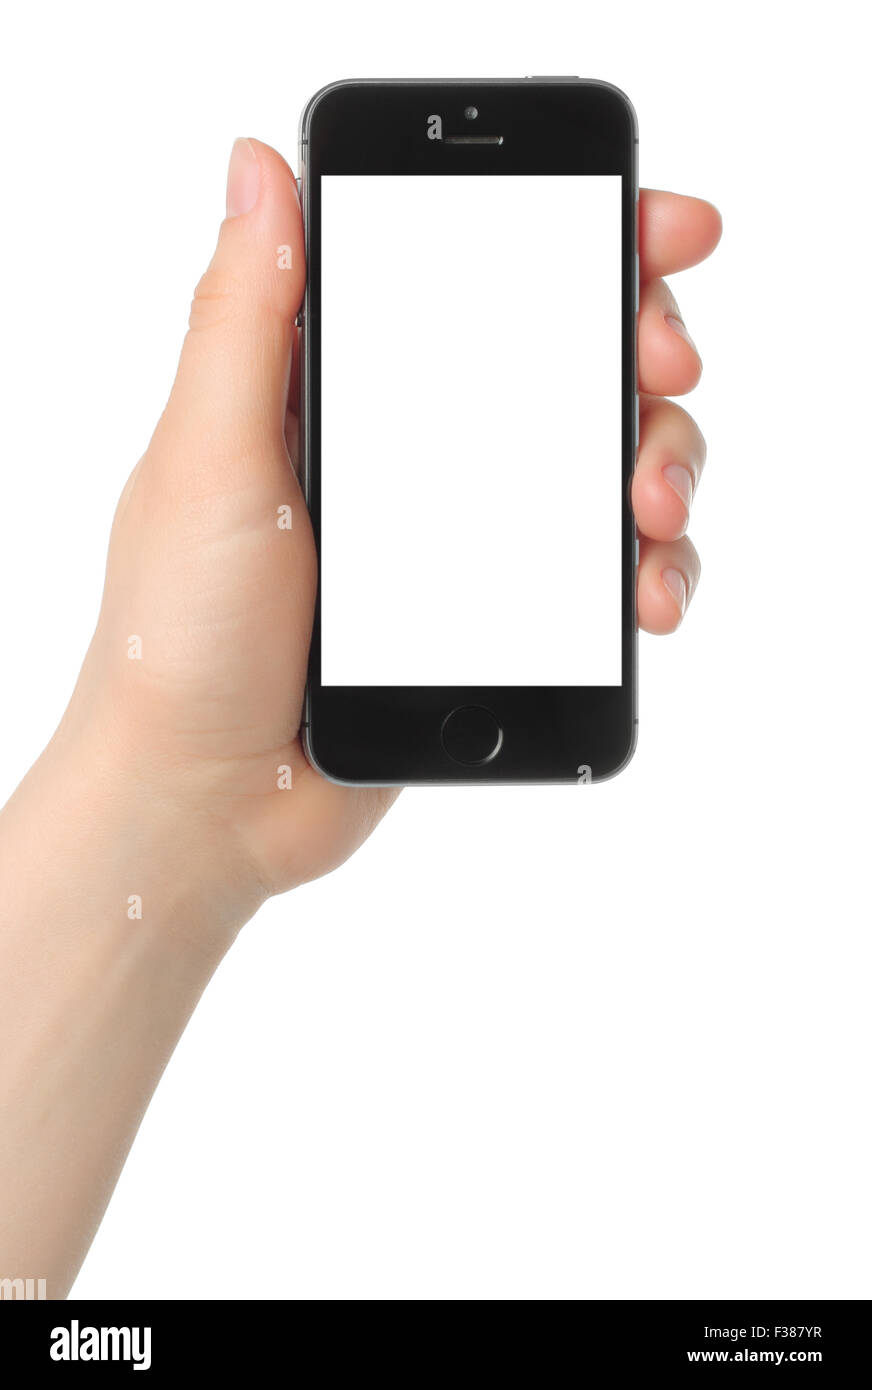 KIEV, UCRAINA - 7 marzo 2015:mano trattiene iPhone 5s spazio grigio su sfondo bianco Foto Stock